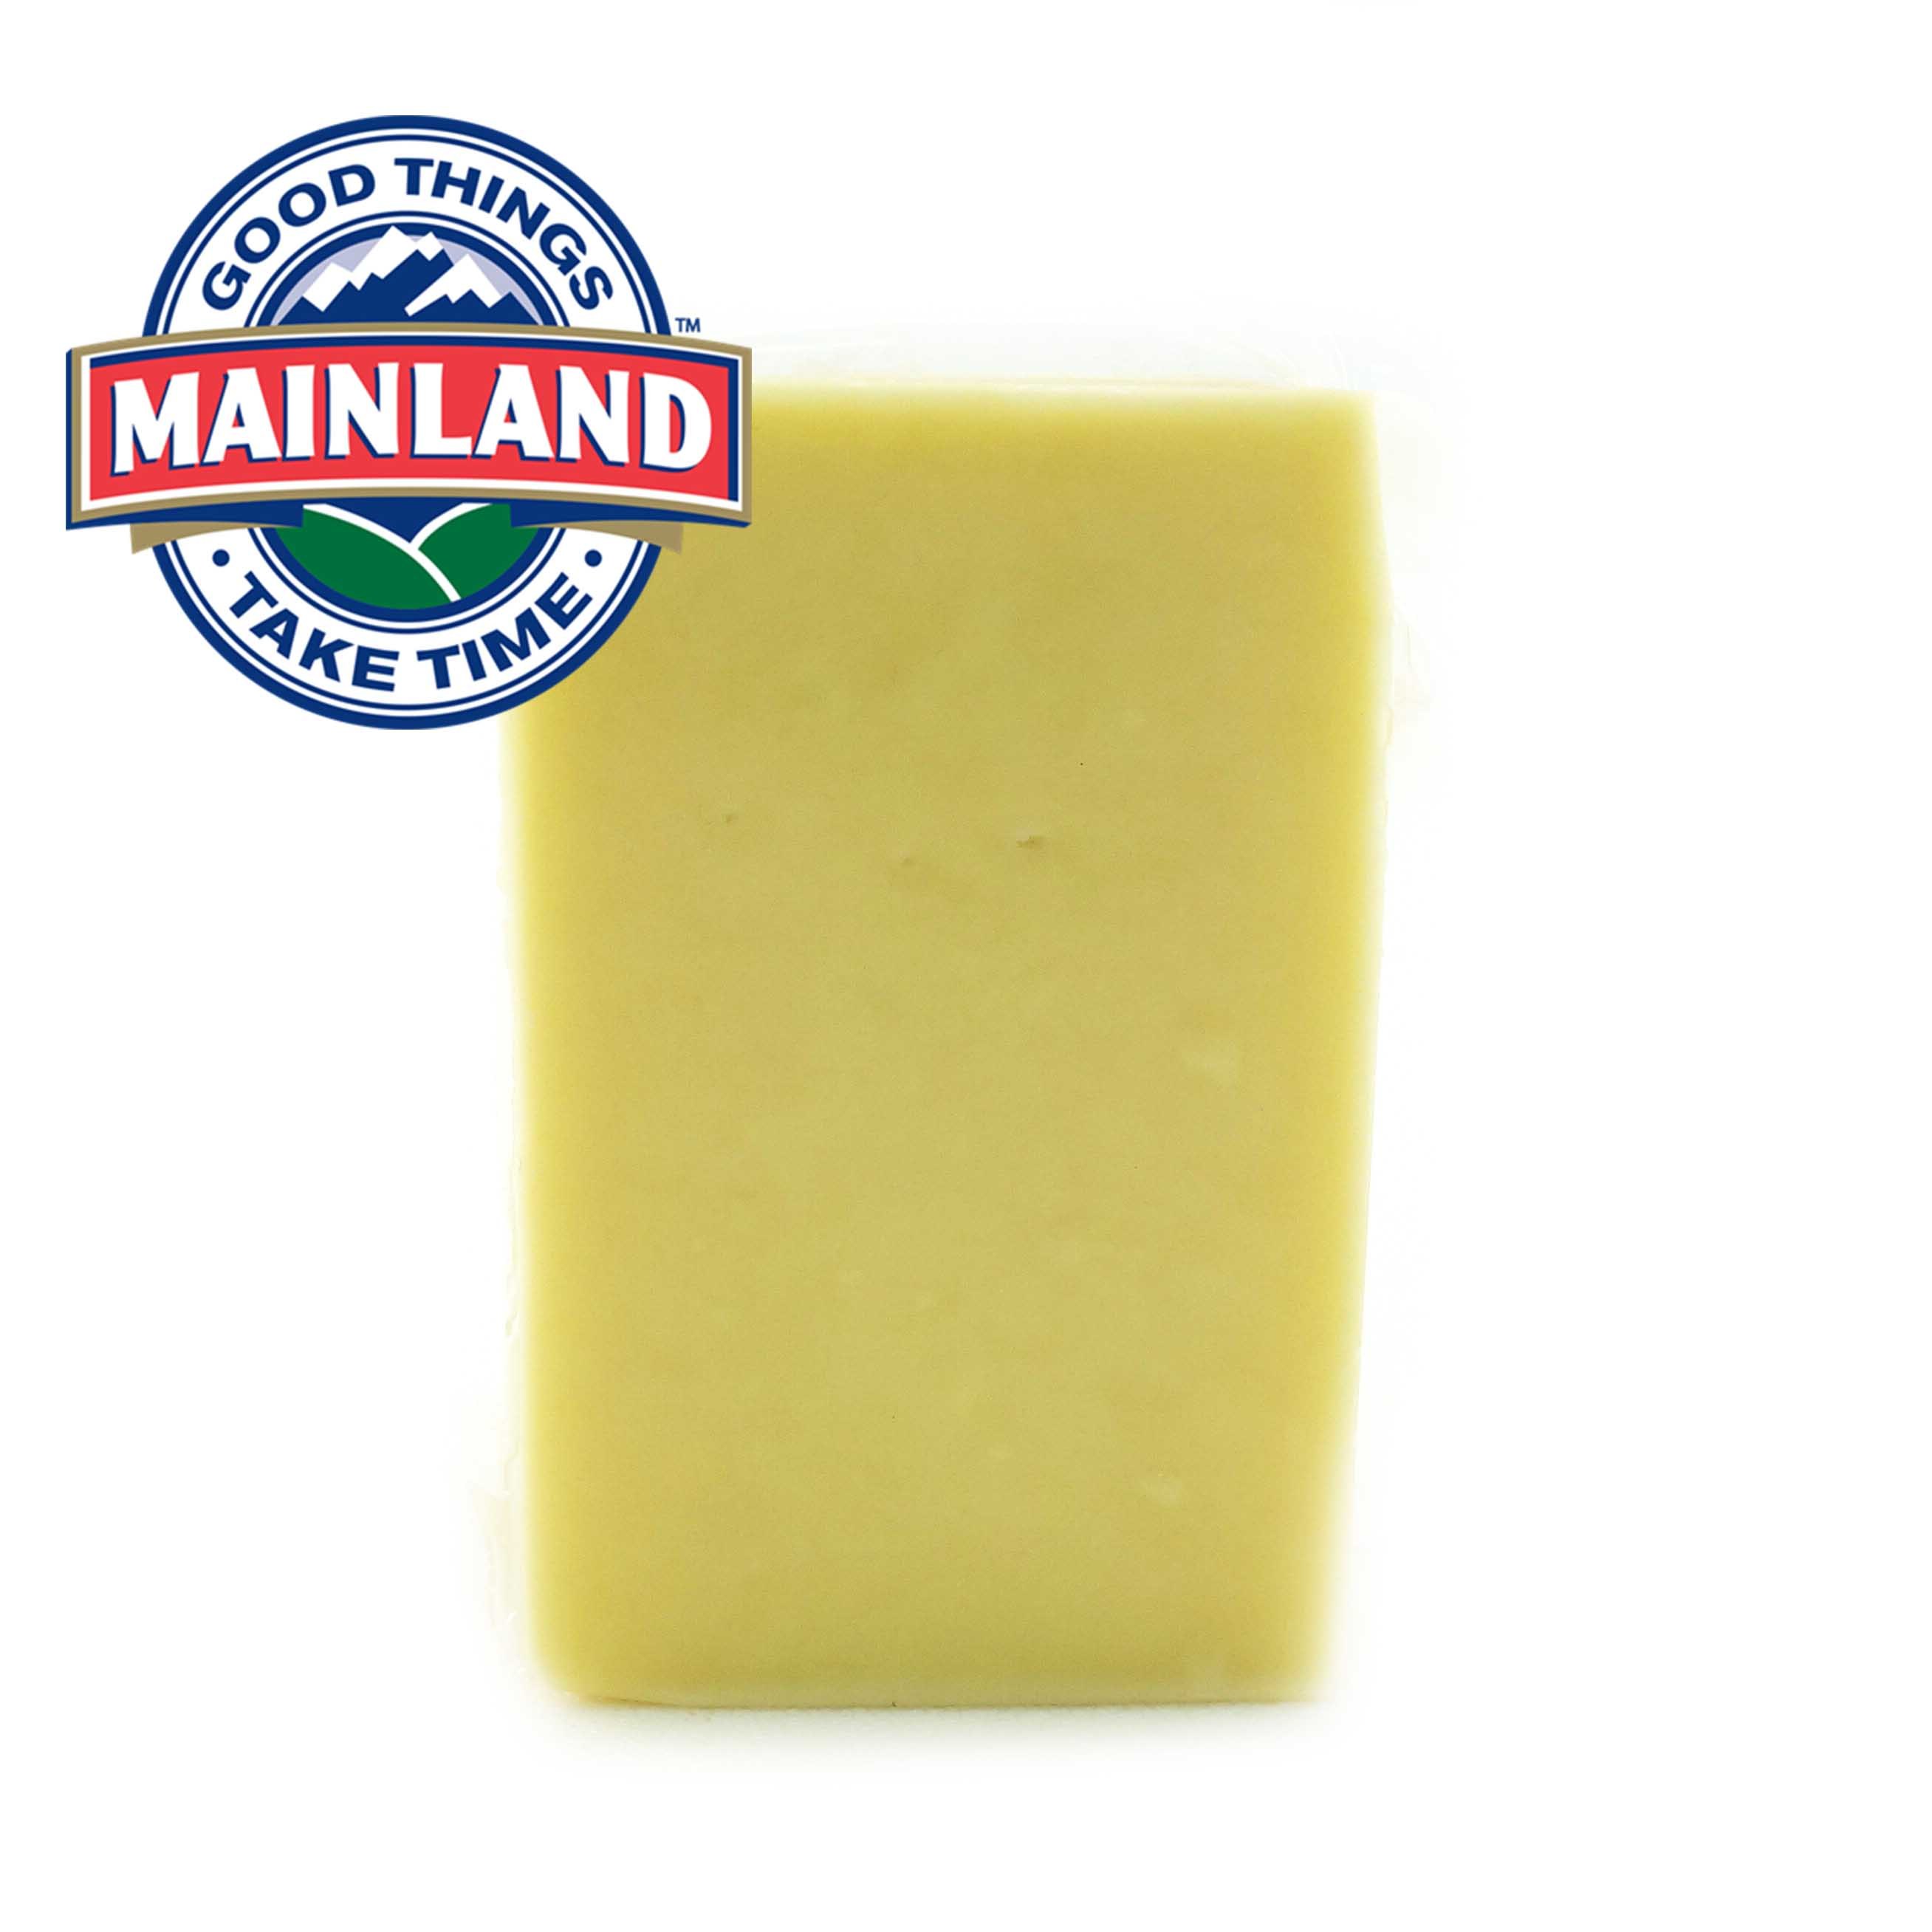 NZ Mainland Edam Cheese